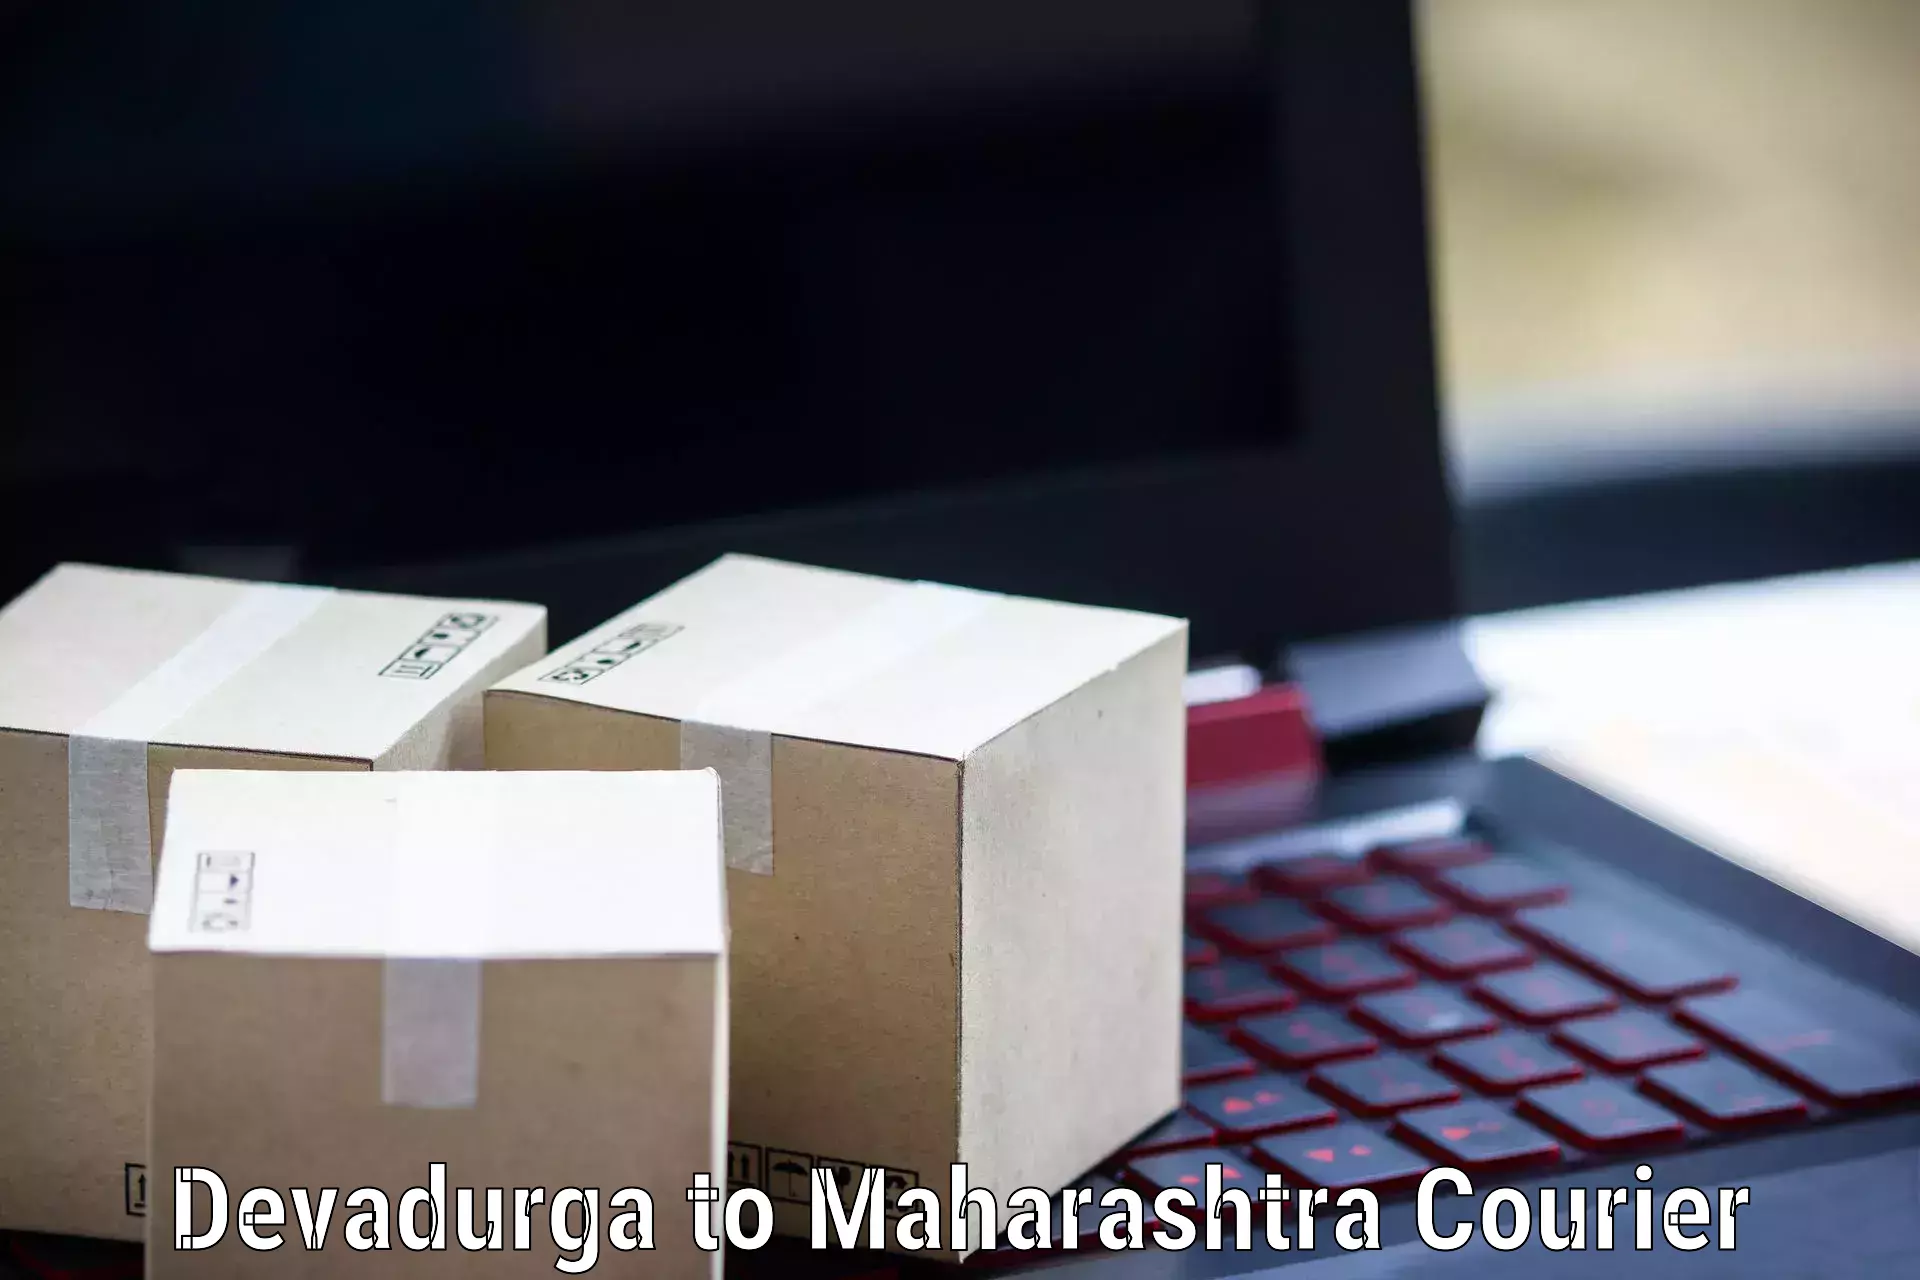 High-priority parcel service Devadurga to Ahmednagar